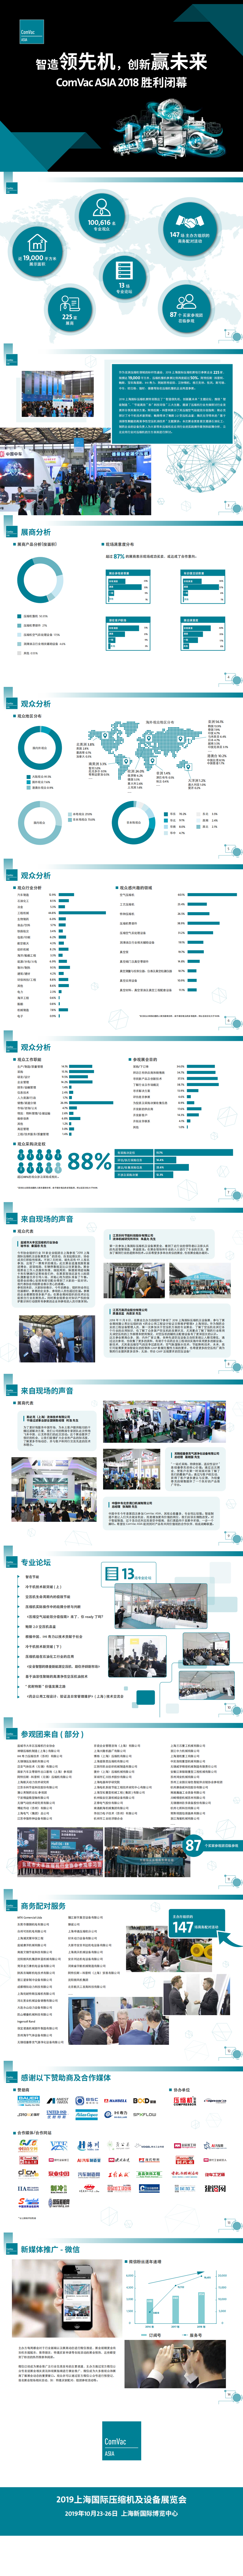 上海压缩机及设备展览会